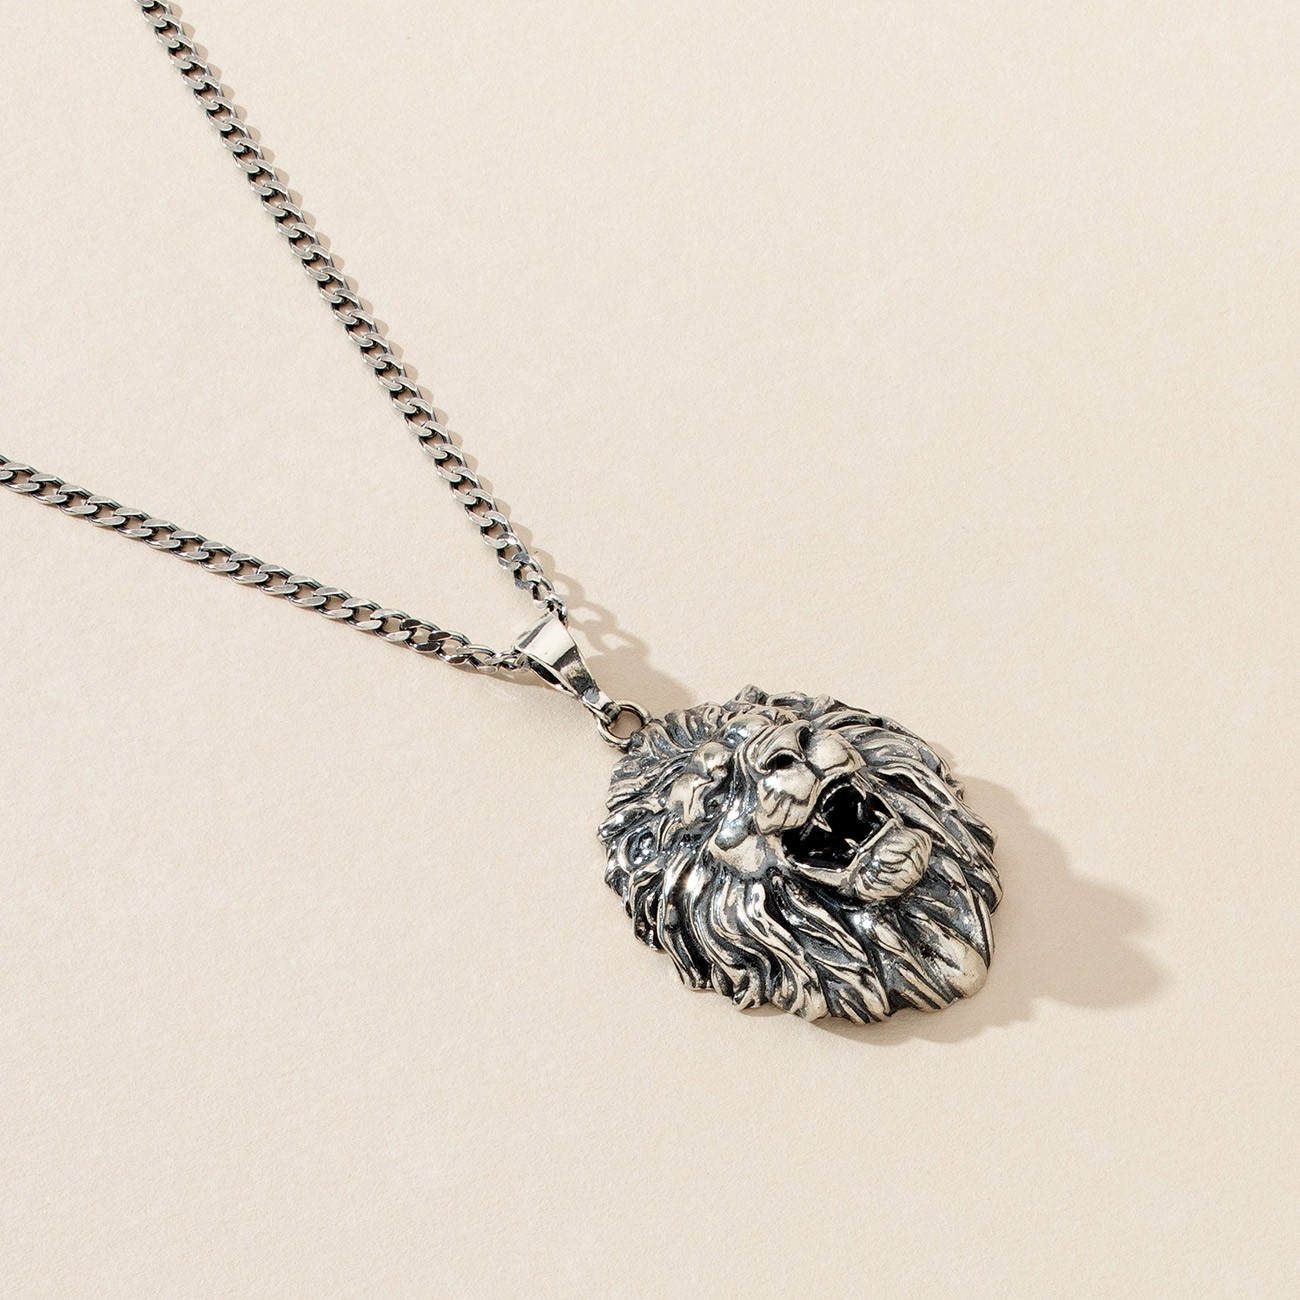 Lion necklace, silver 925